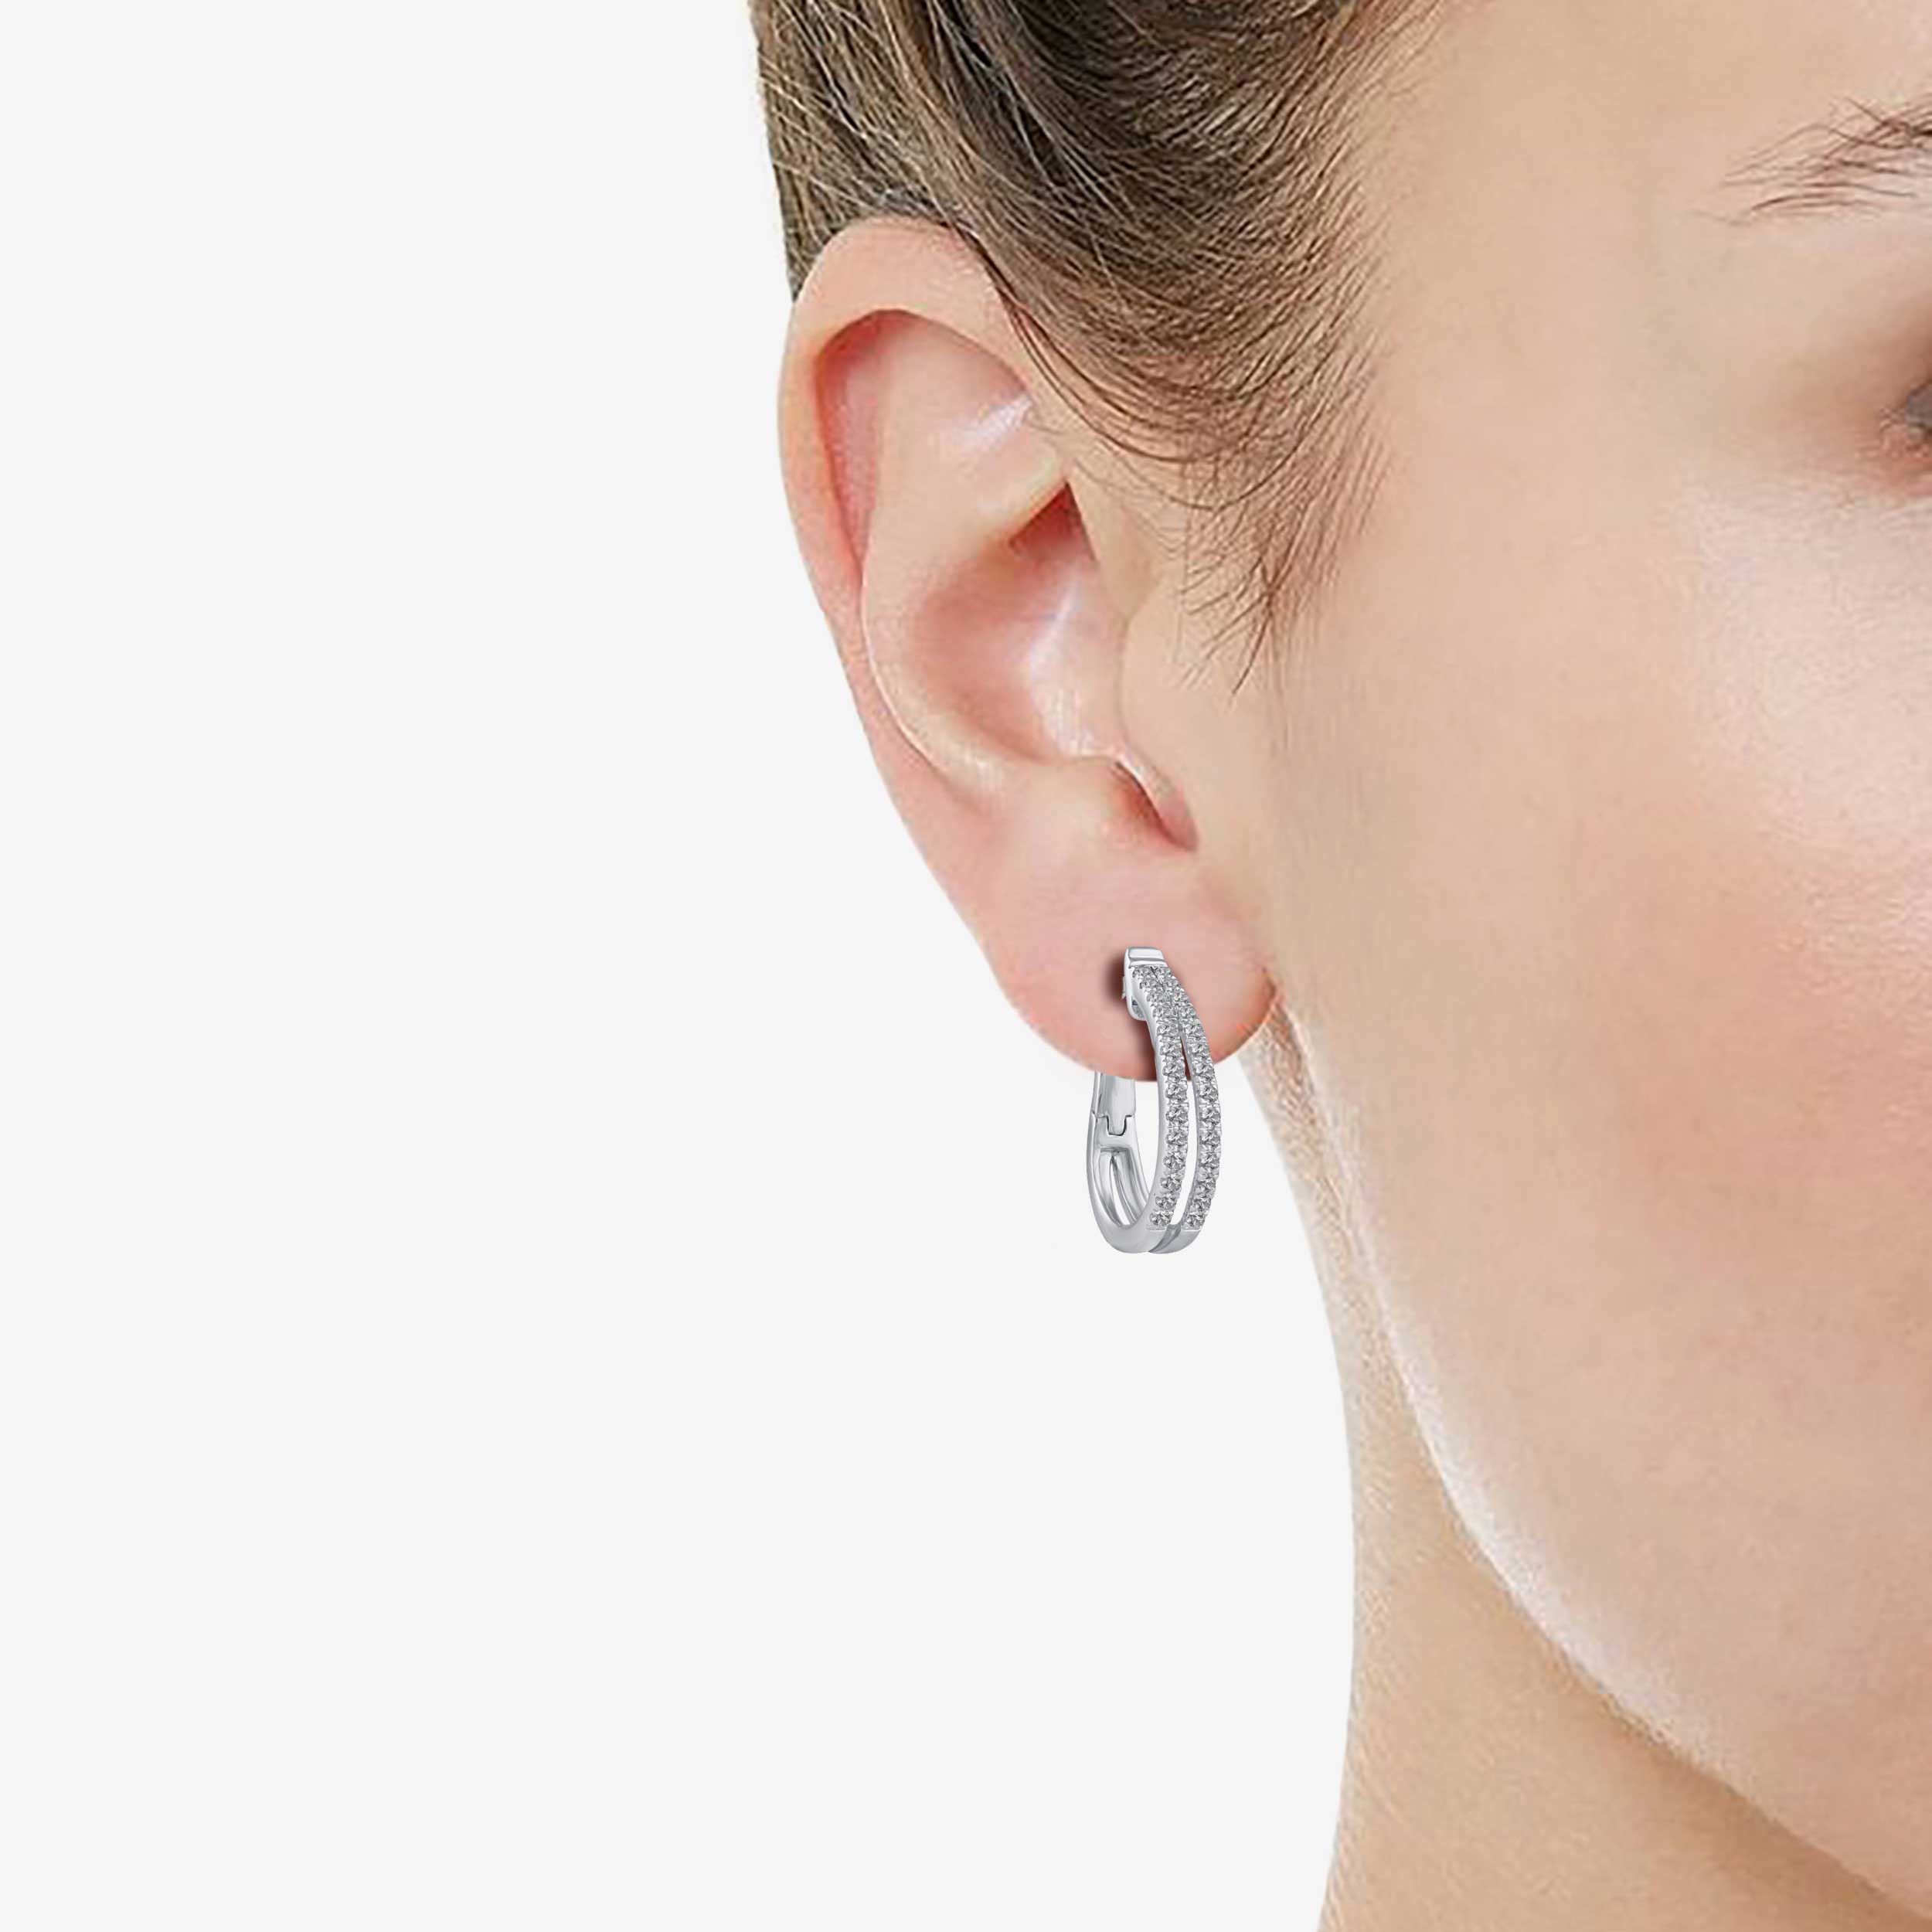 Buy Double Piercing Earring, Double Piercing, Staple Earrings, Two Hole  Earrings, Earring Set, Post Earrings, Double Lobe Piercing Online in India  - Etsy